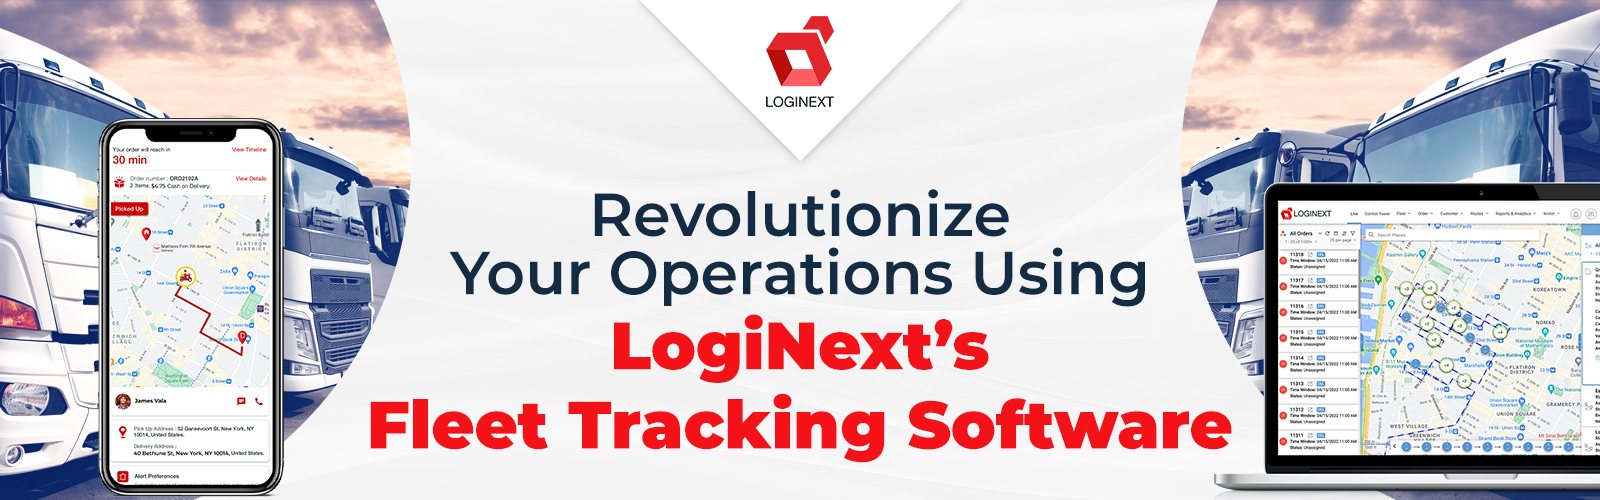 Breng een revolutie teweeg in uw bedrijfsvoering met behulp van de fleettrackingsoftware van LogiNext